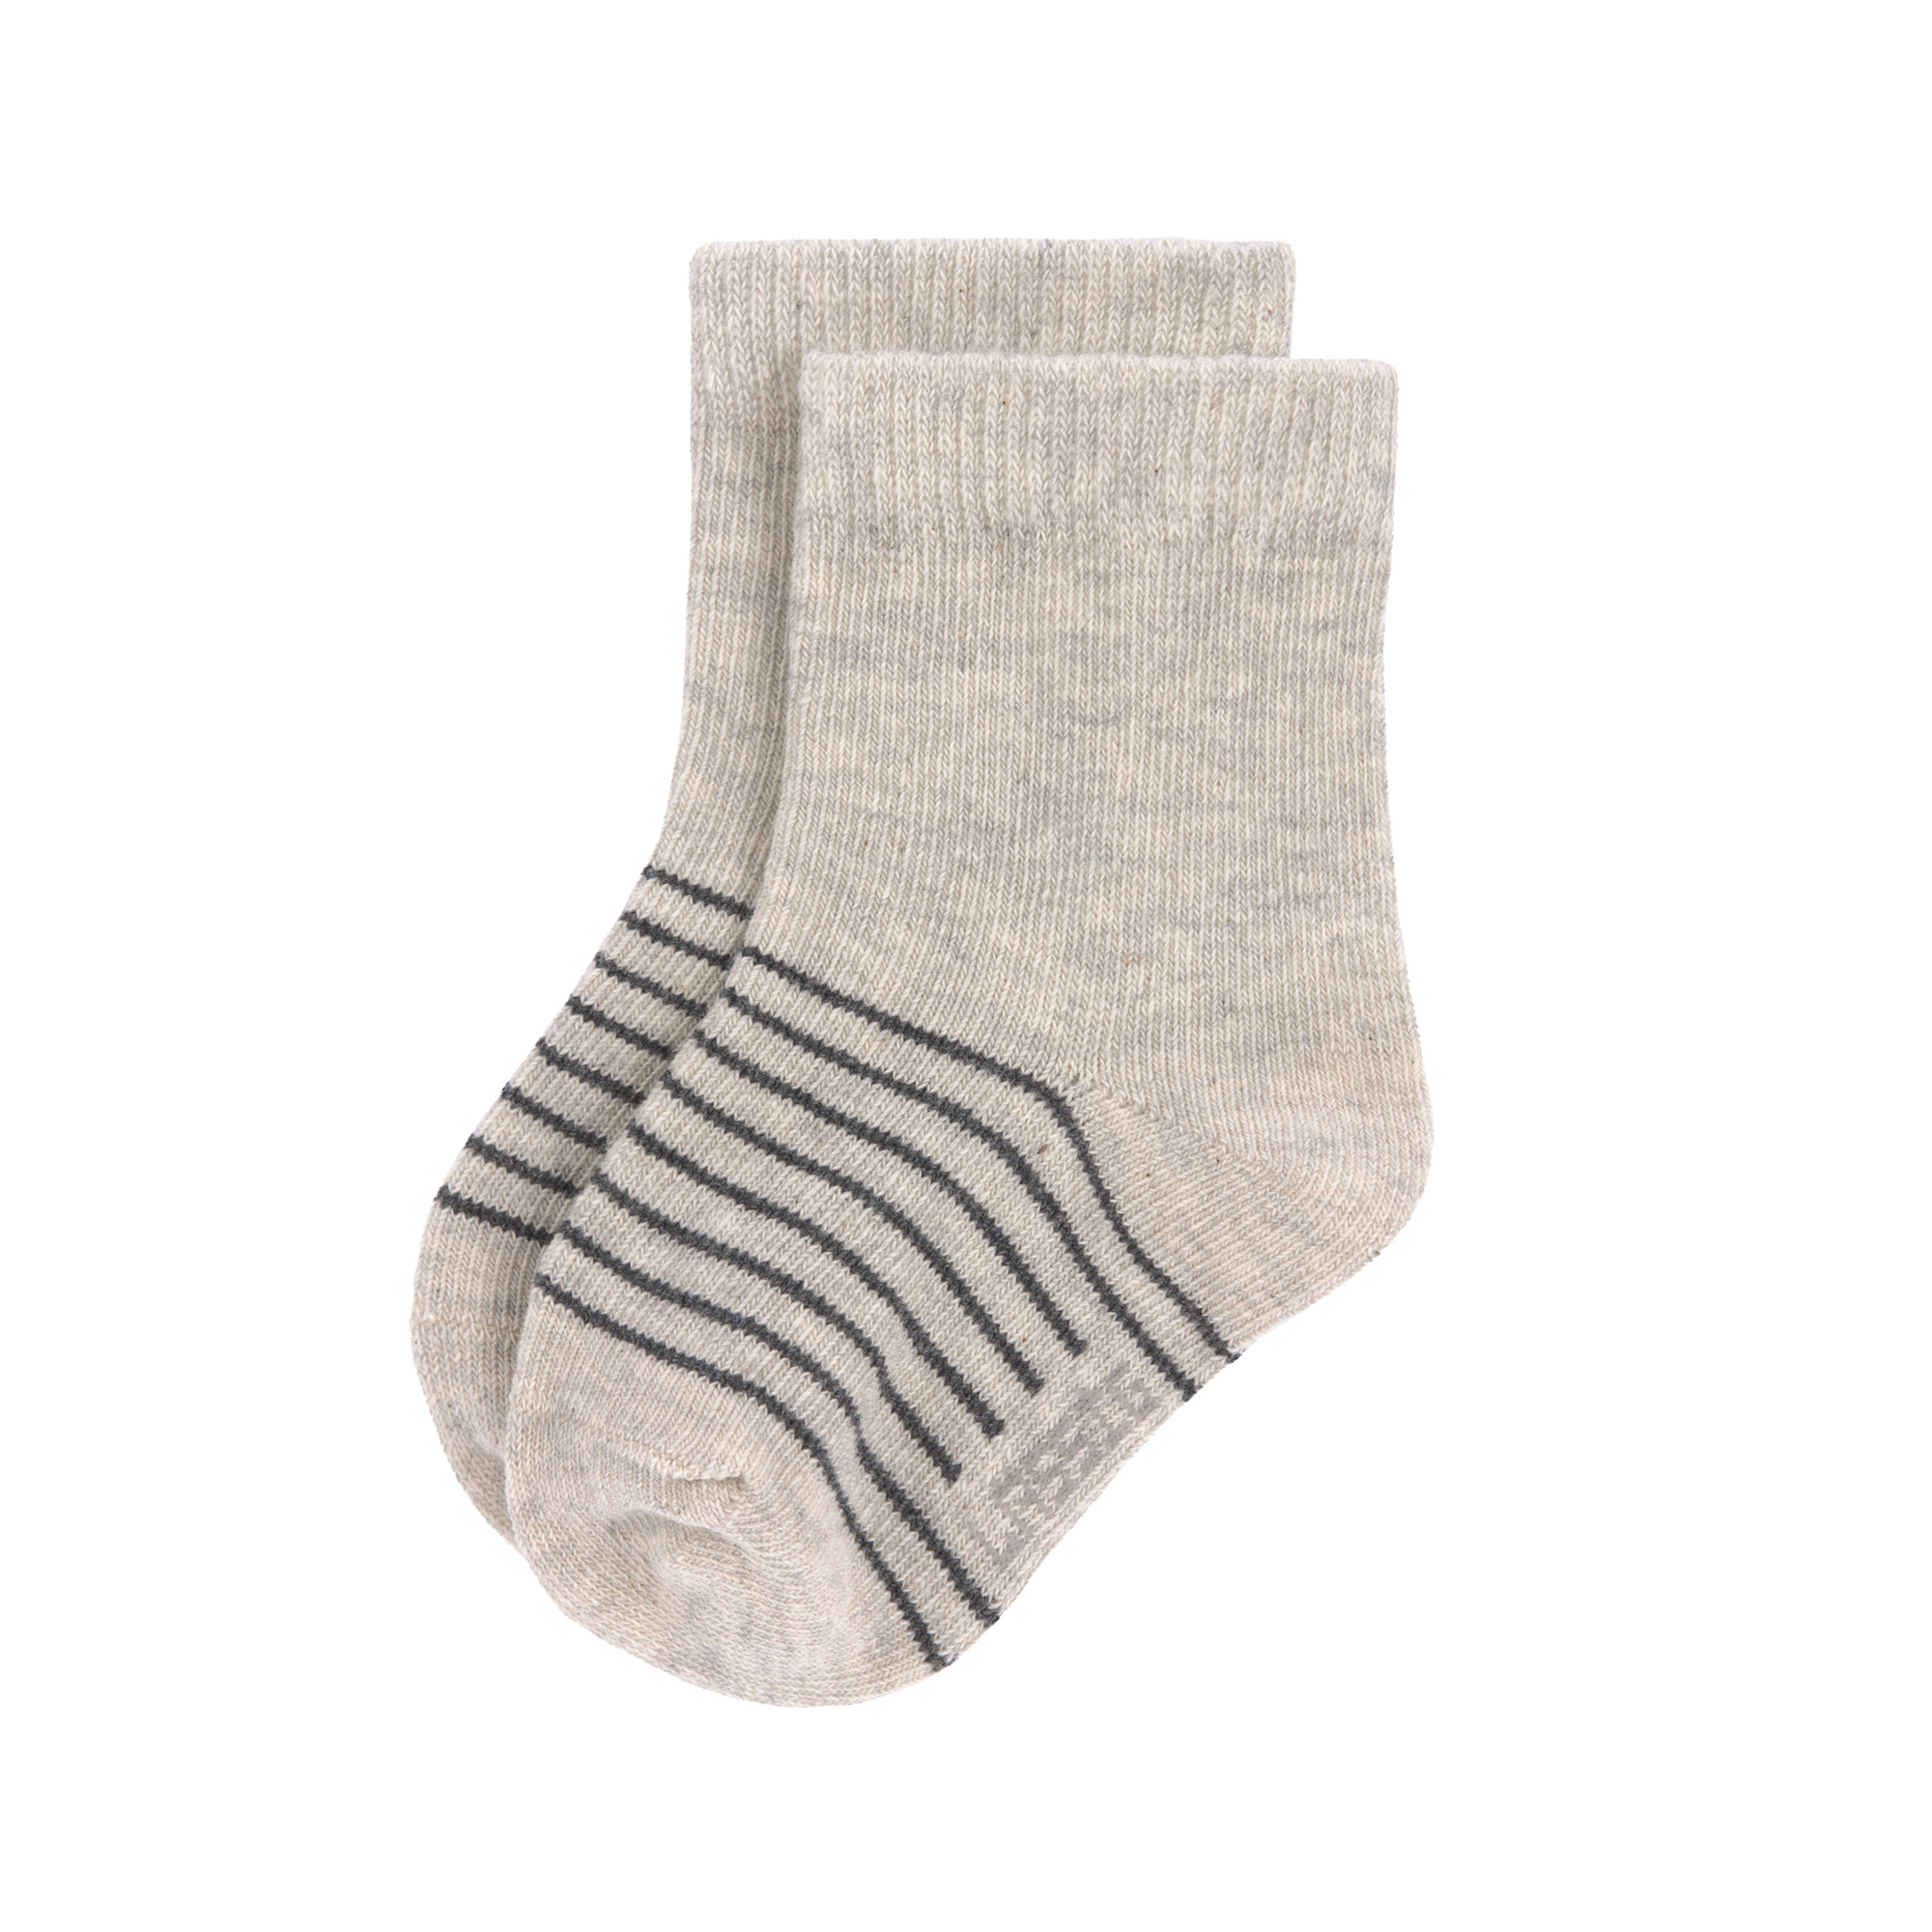 Kinder-Socken (3er-Pack) aus Bio-Baumwolle GOTS - "Grey" 